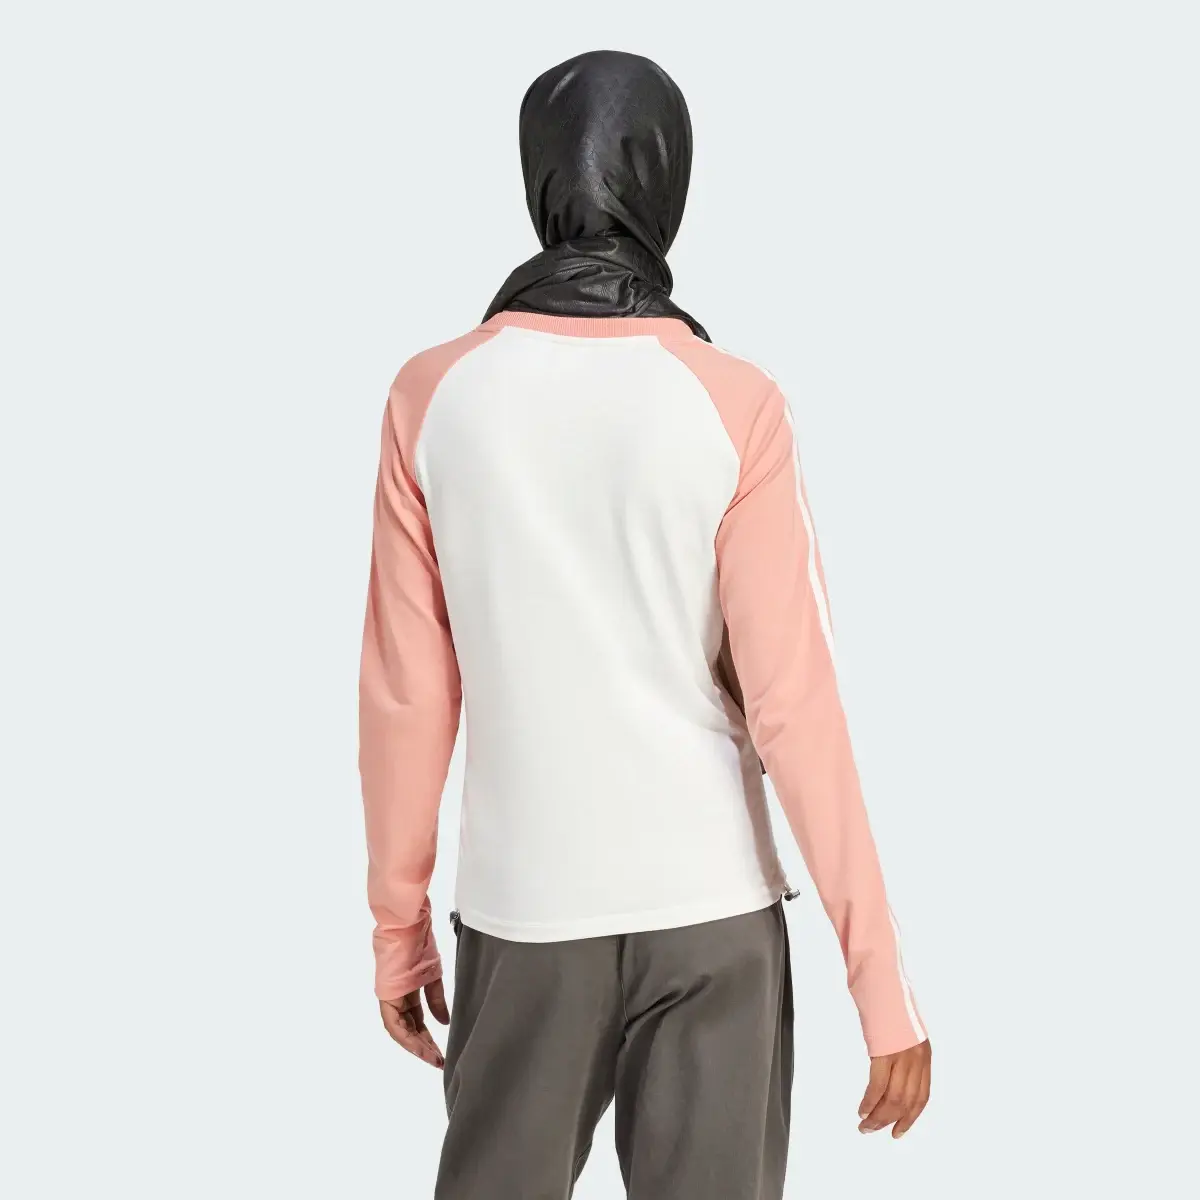 Adidas Slim Fit Long Sleeve Long-Sleeve Top. 3